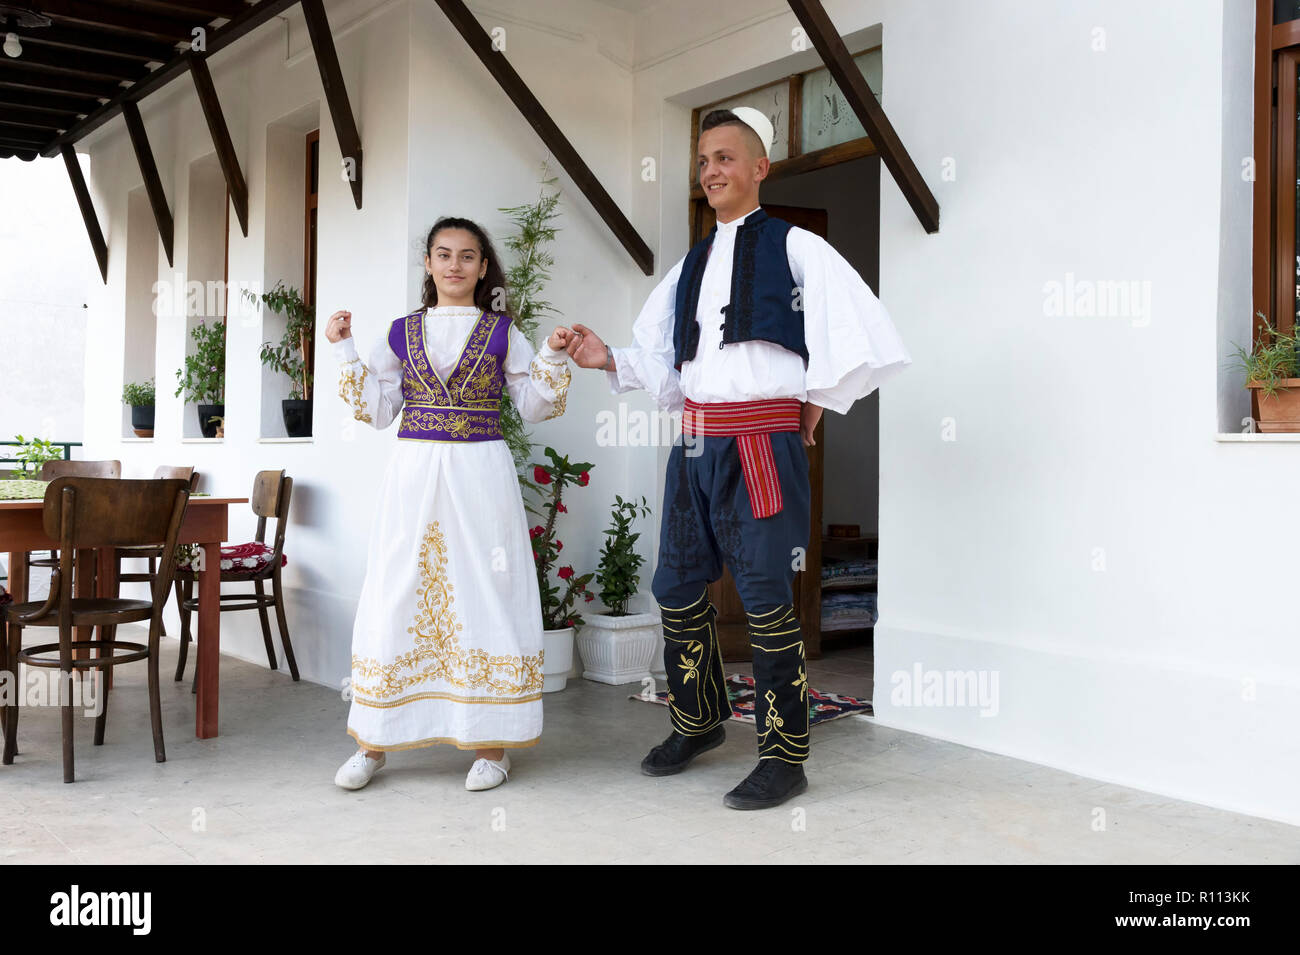 Locale gruppo folkloristico in costumi tradizionali dimostrando nazionale di danza albanese, Berat, Albania Foto Stock